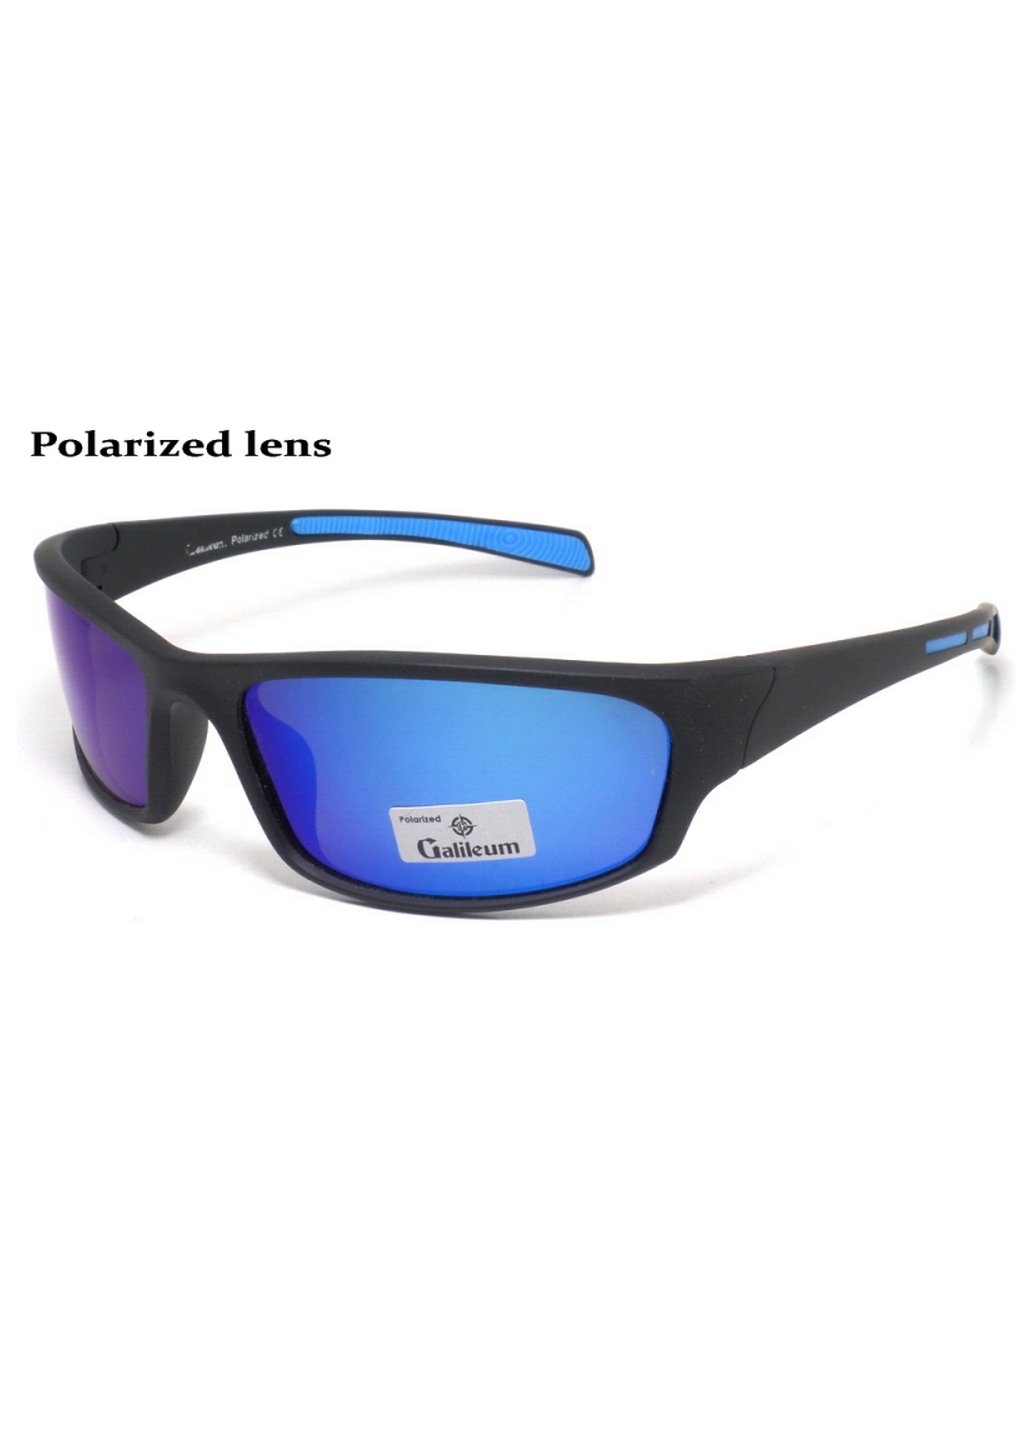 Купить Спортивные очки с поляризацией Galileum 125013 в интернет-магазине